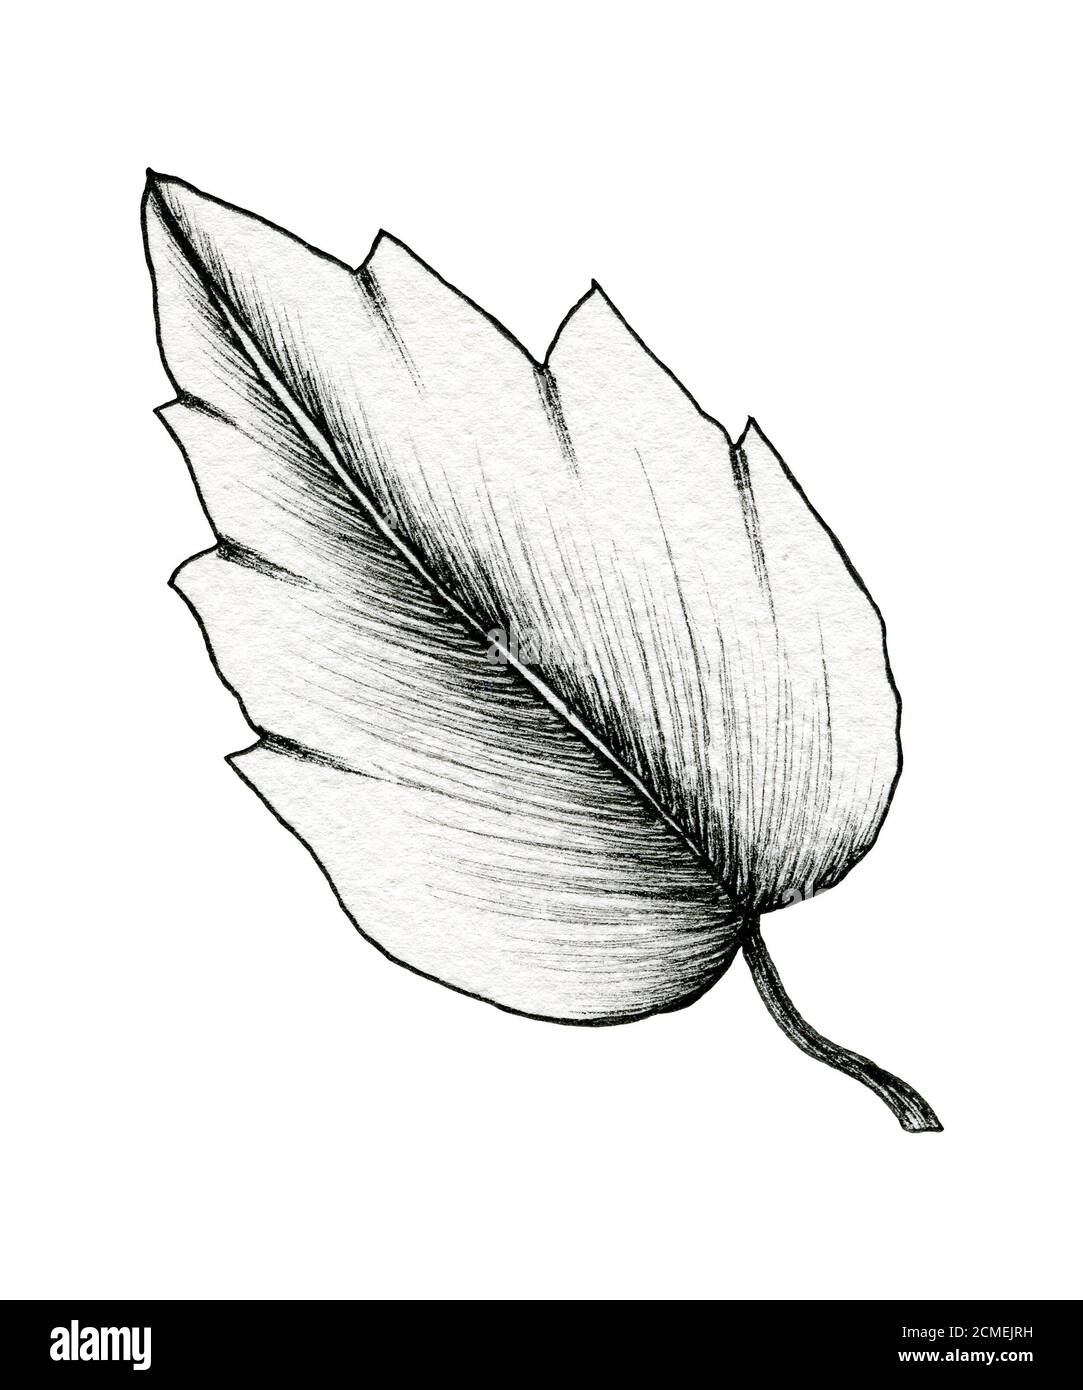 dessin de feuille d'encre noire isolé sur blanc, dessin d'art simple de  ligne d'une feuille, illustration botanique dessinée à la main, croquis de  feuille noire Photo Stock - Alamy